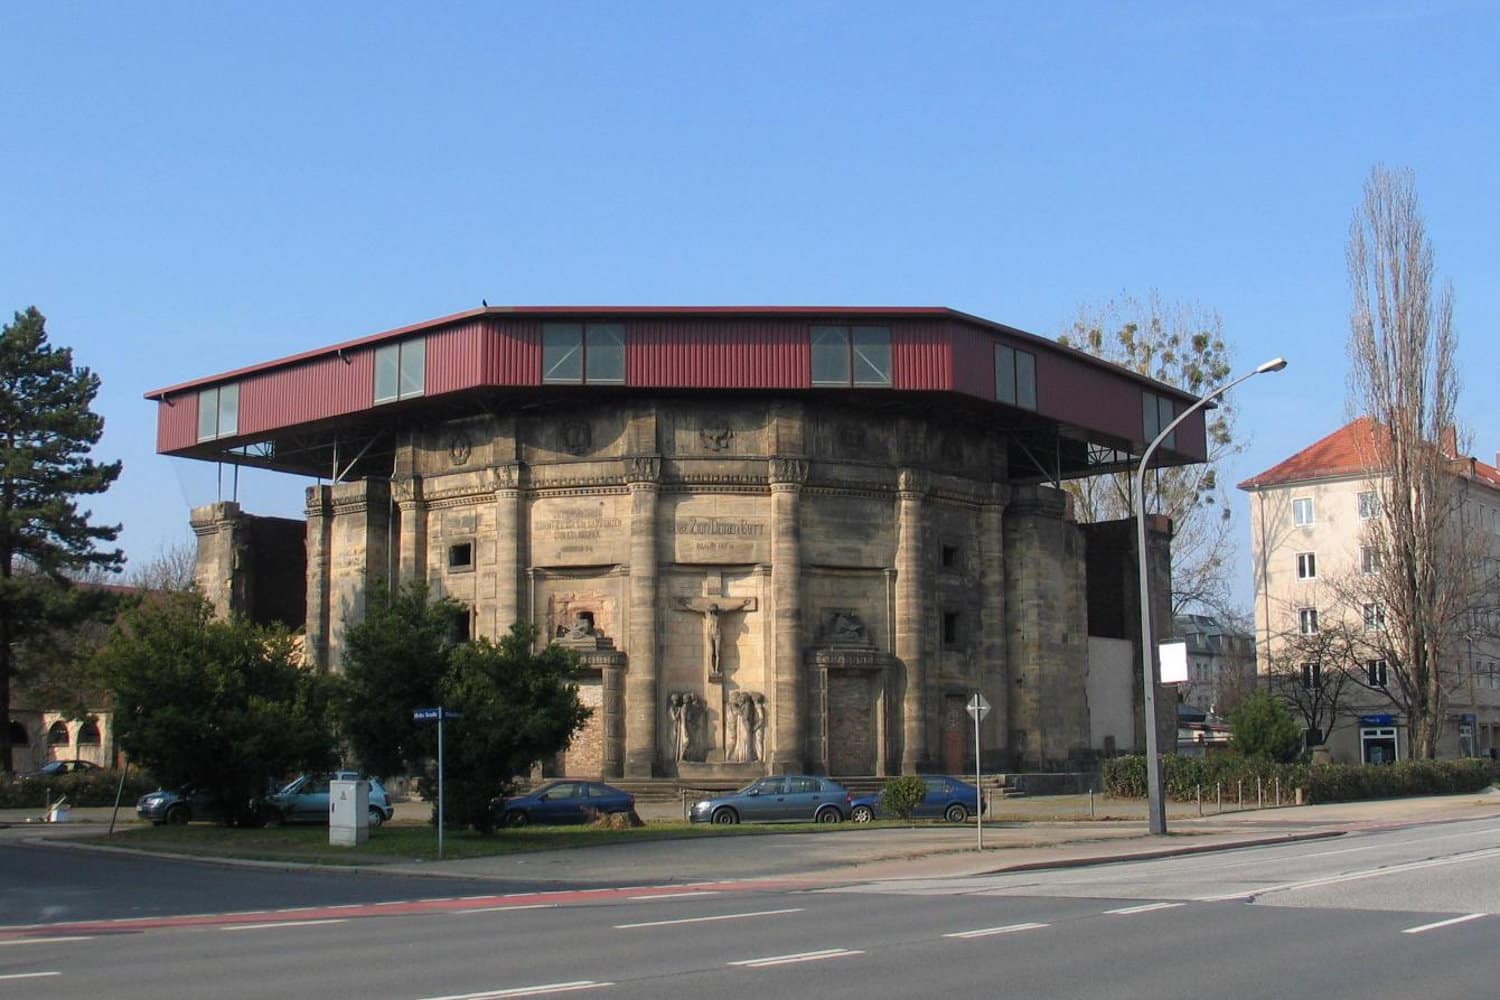 Das Lapidarium Zionskirche in Dresden. Von DP-1 - Eigenes Werk, CC BY 2.5, https://commons.wikimedia.org/w/index.php?curid=1762937